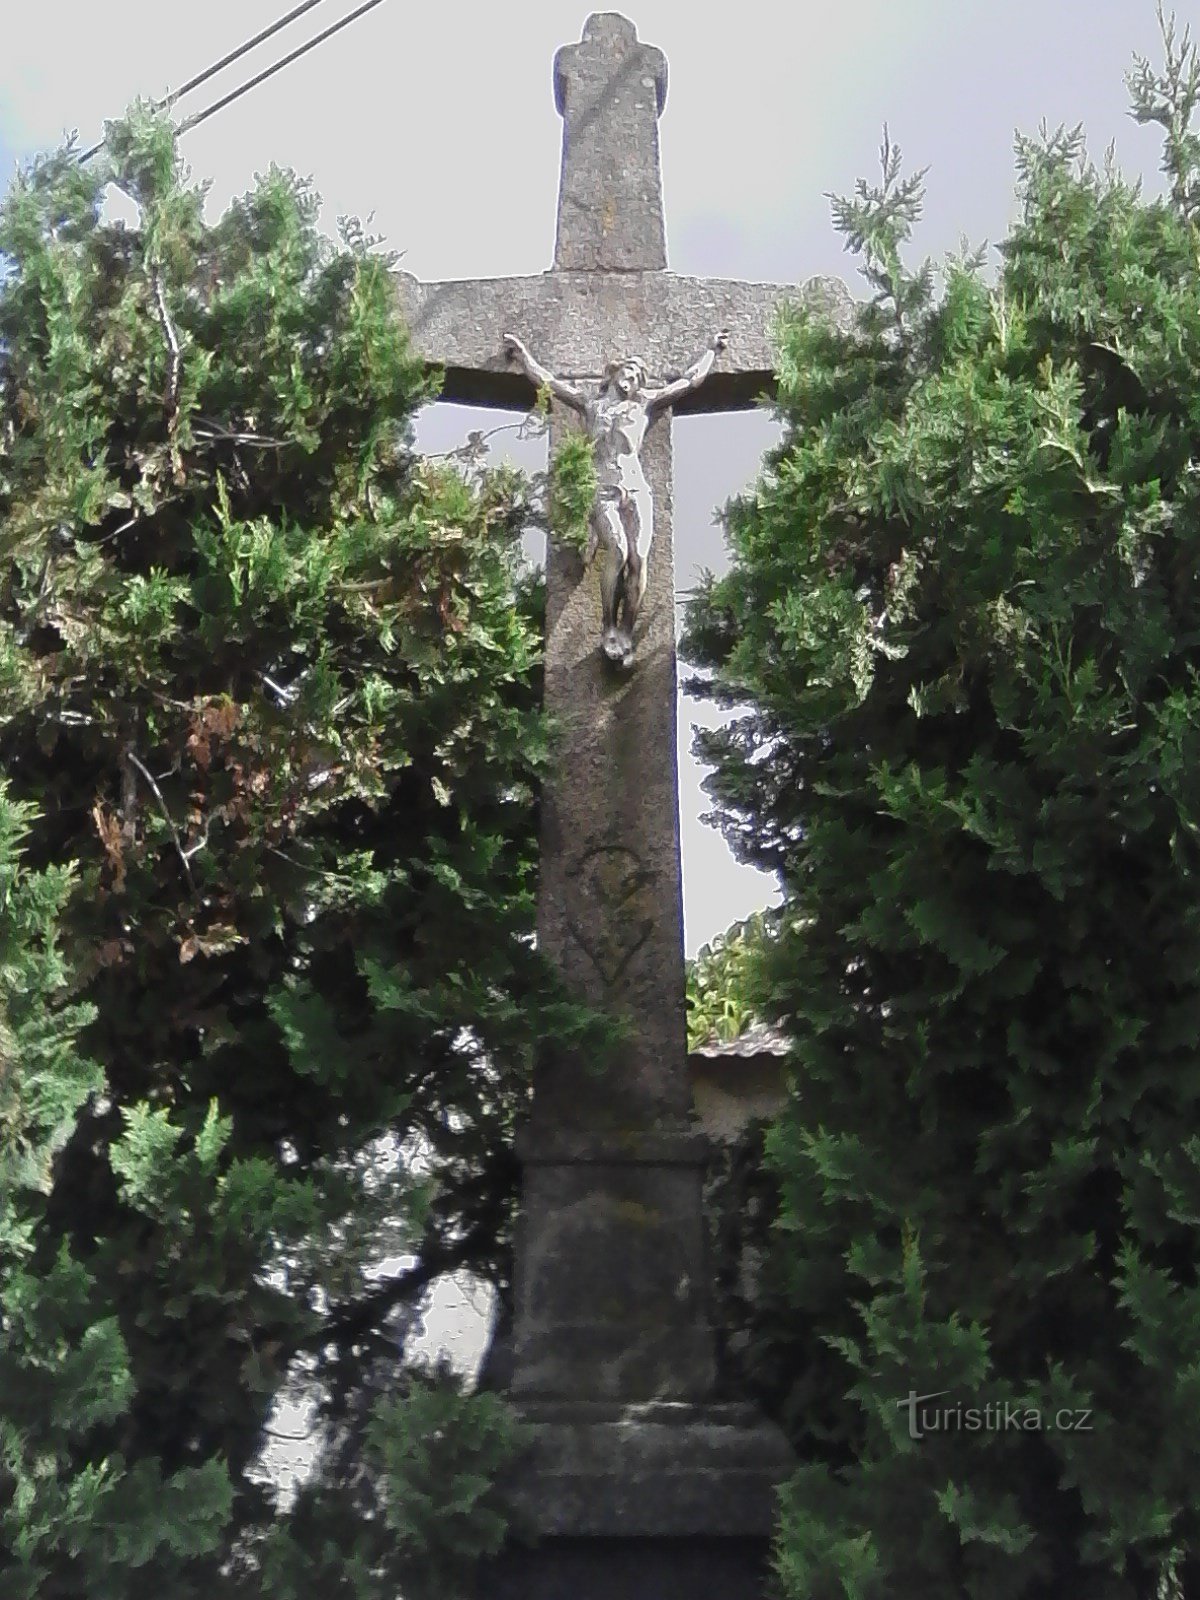 1. Một cây thánh giá bằng đá chạm khắc với một chén thánh từ năm 1856 ở Nechvalice.